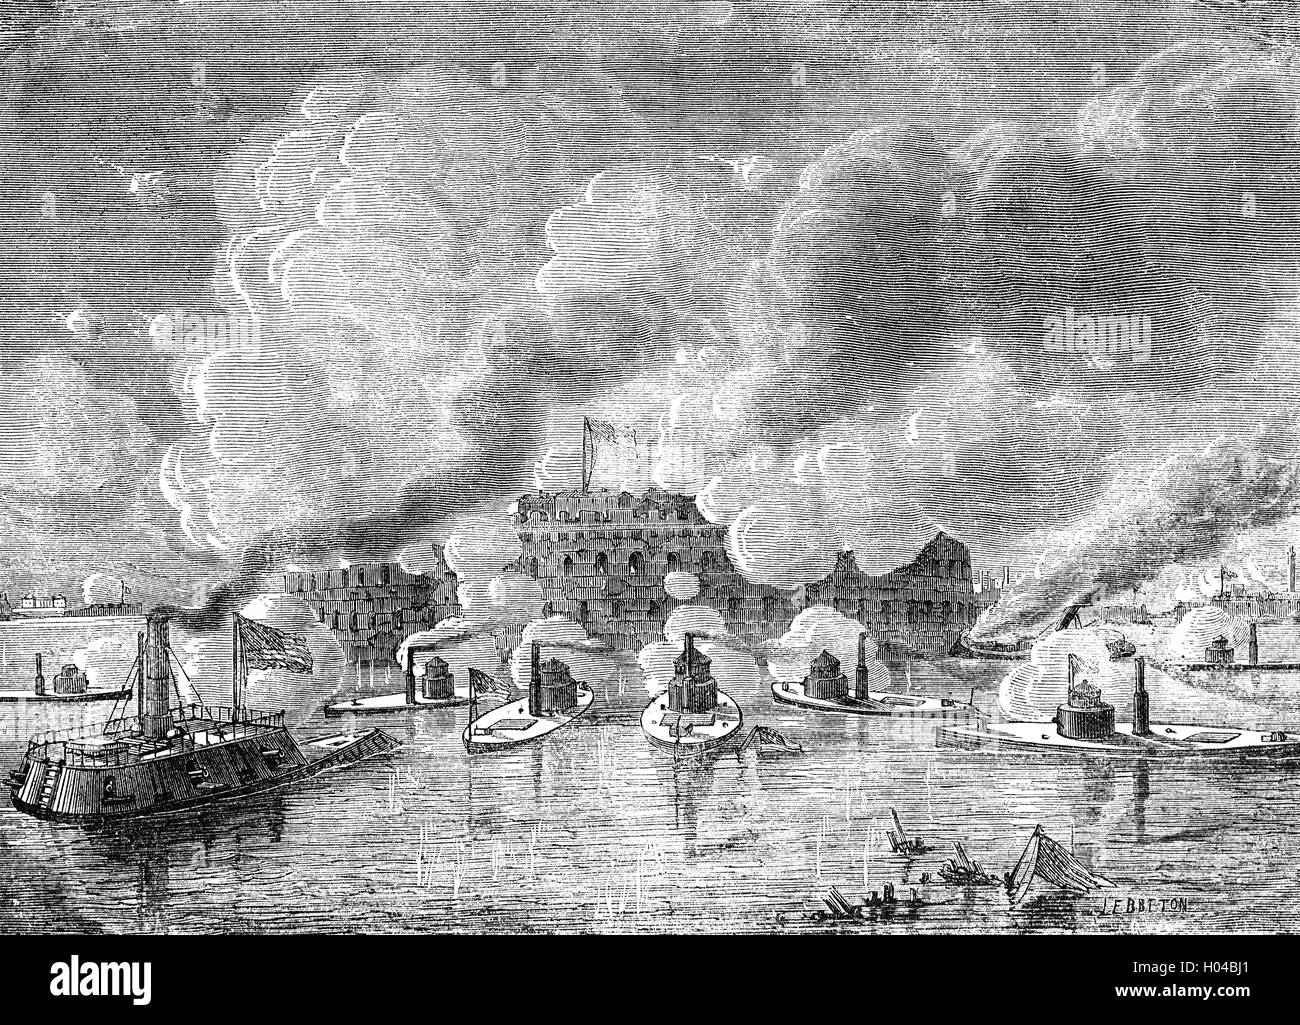 Der Angriff auf Fort Sumter, eine spezielle Meeresfestung geplant nach dem Krieg von 1812.  Die ersten Schüsse des amerikanischen Bürgerkrieges, der ersten Schlacht von Fort Sumter eröffnete am 12. April 1861, als konföderierte Artillerie feuerte auf die Union Garnison in Charleston, South Carolina, Vereinigte Staaten von Amerika. Stockfoto